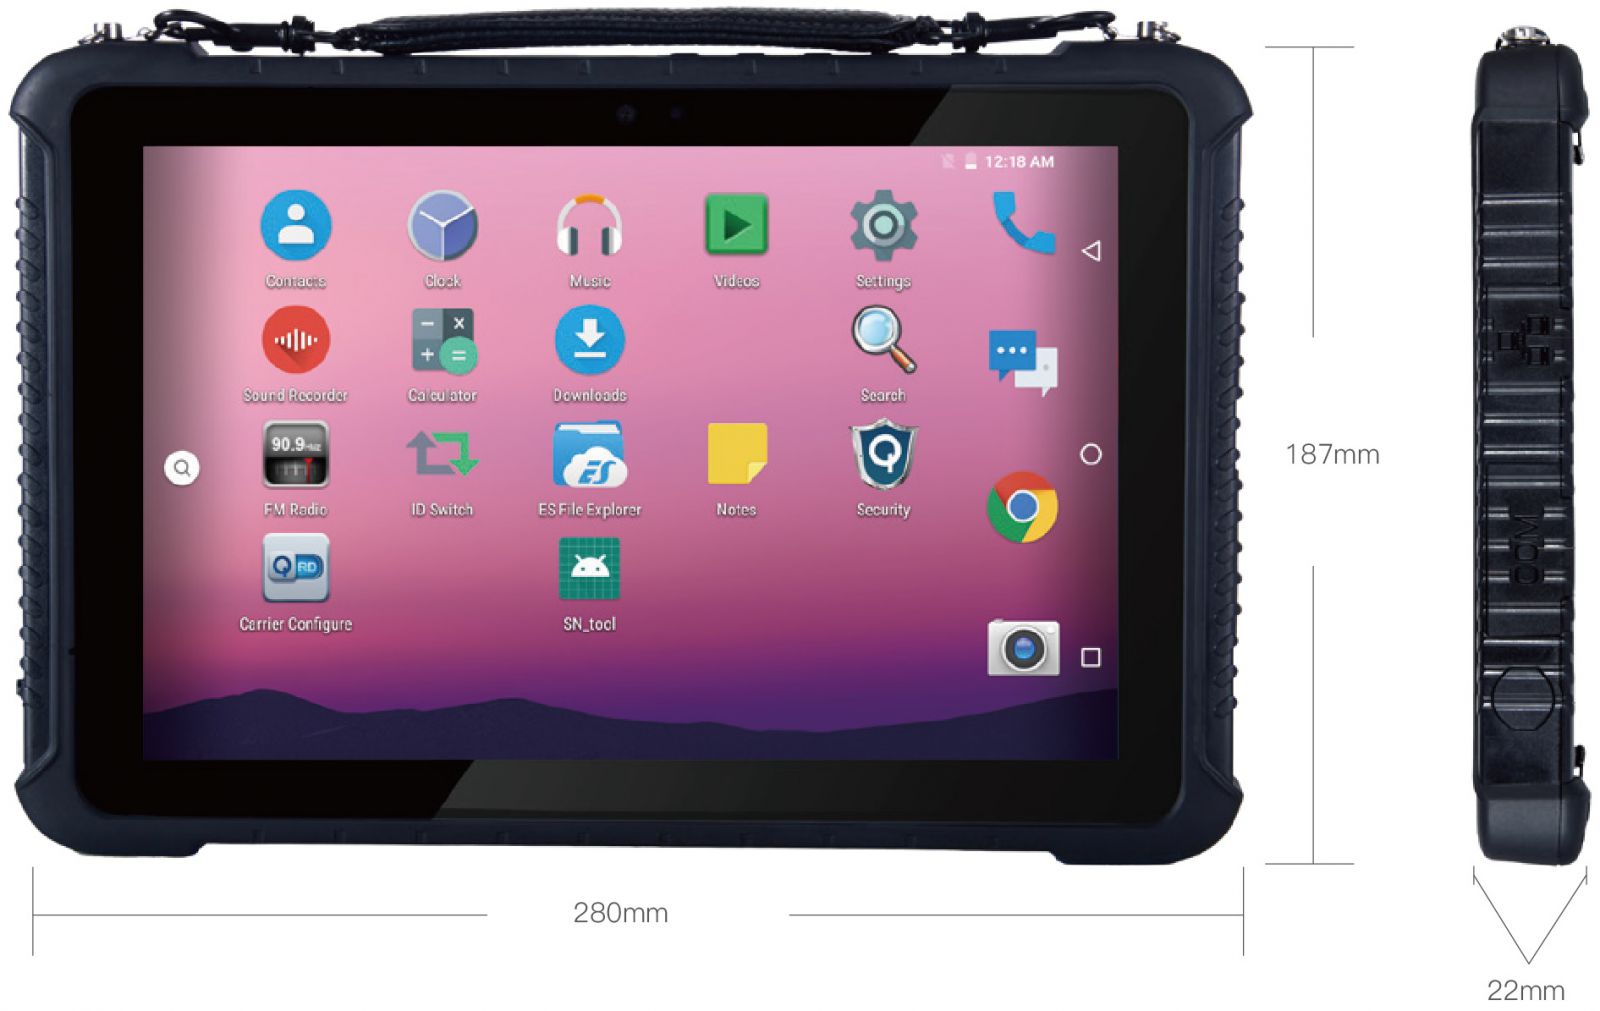 Emdoor Q16 v.6 - wytrzymay 10 calowy tablet przemysowy z Androidem 9.0, skanerem kodw 2D Honeywell TTL, 4GB RAM i dysk 64GB, AR Film i NFC